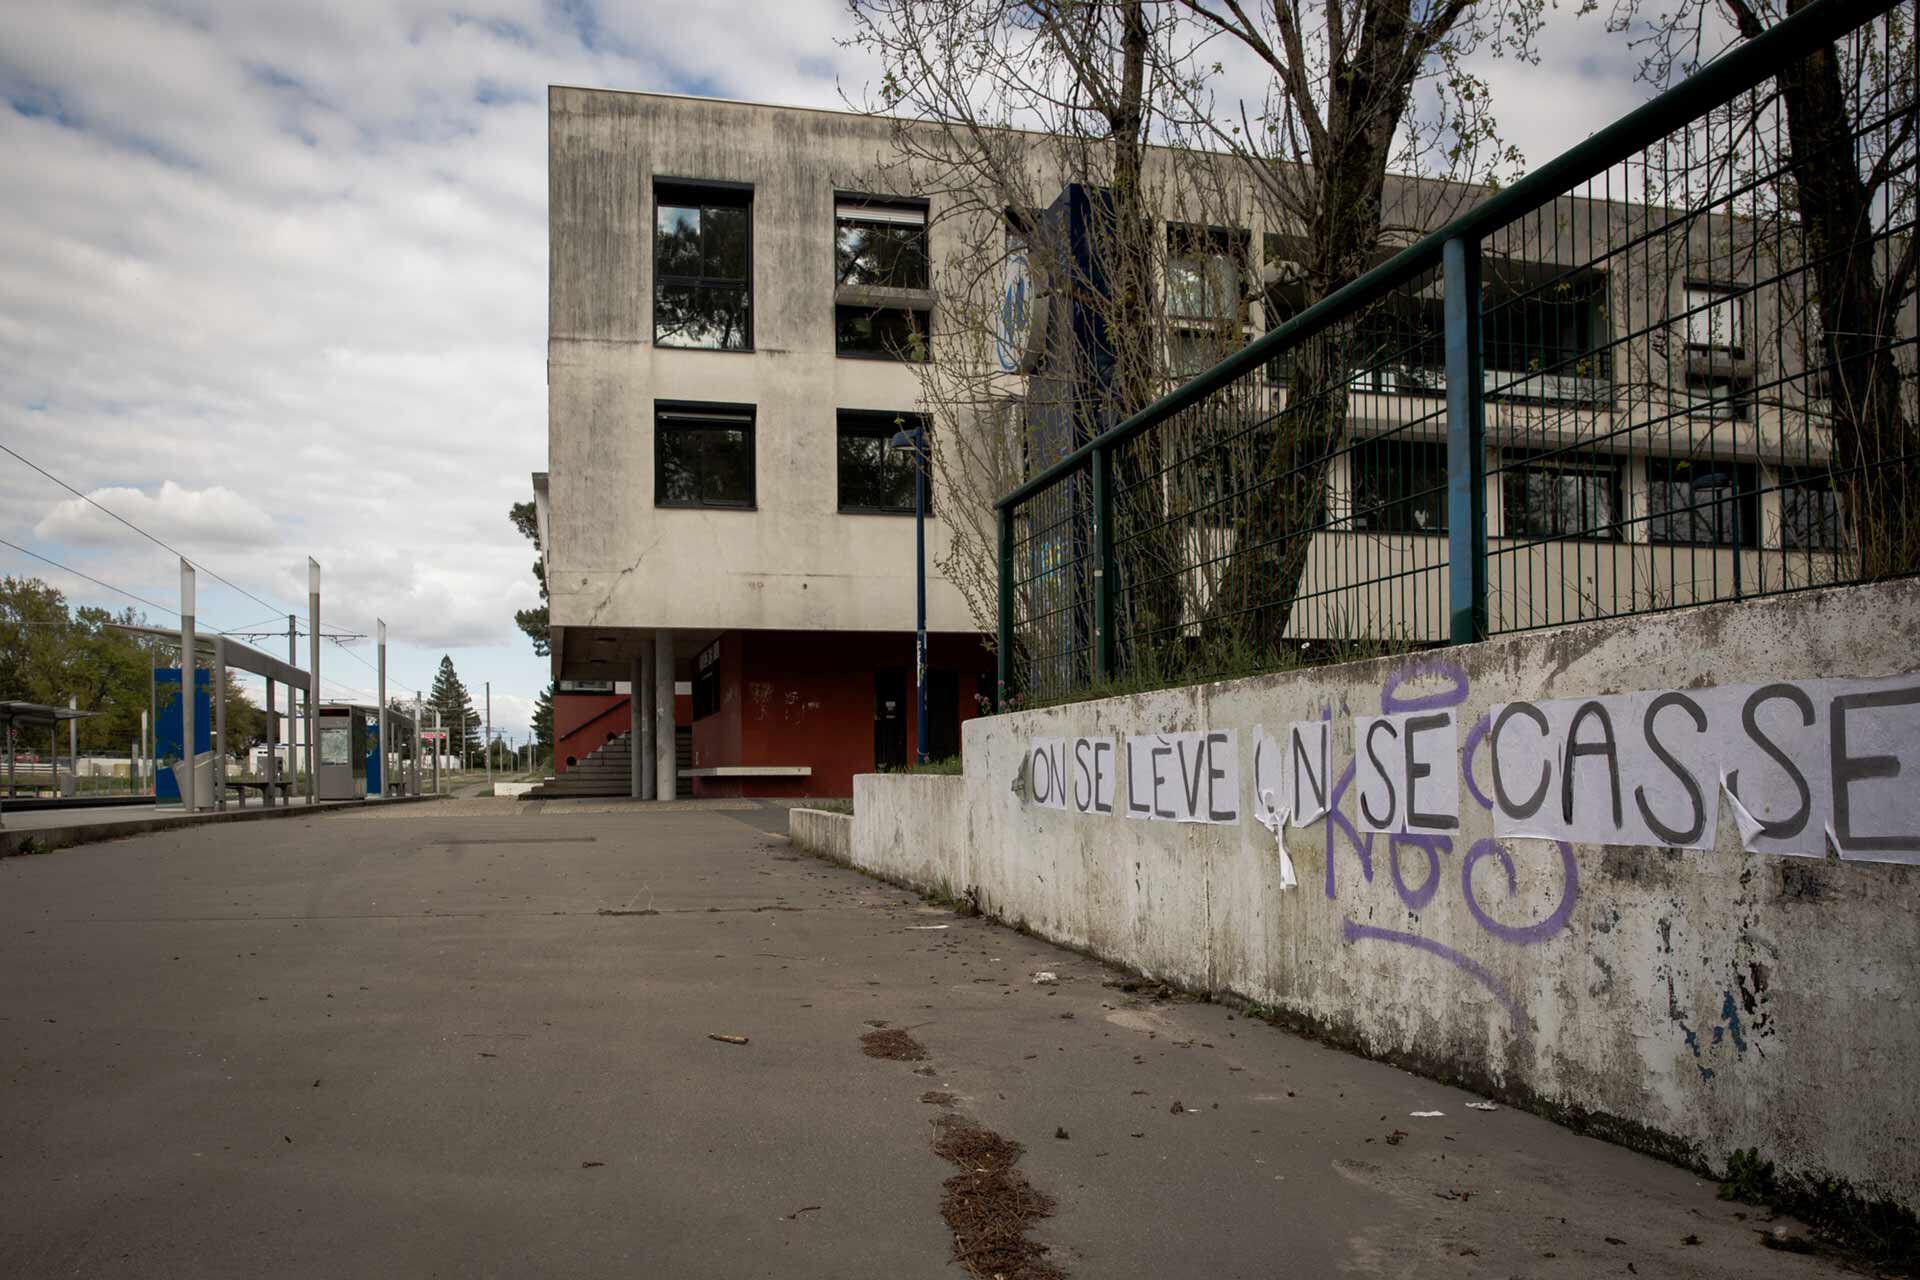 L'Université Montaigne vide, avec un collage sur le mur "On se lève et on se casse".